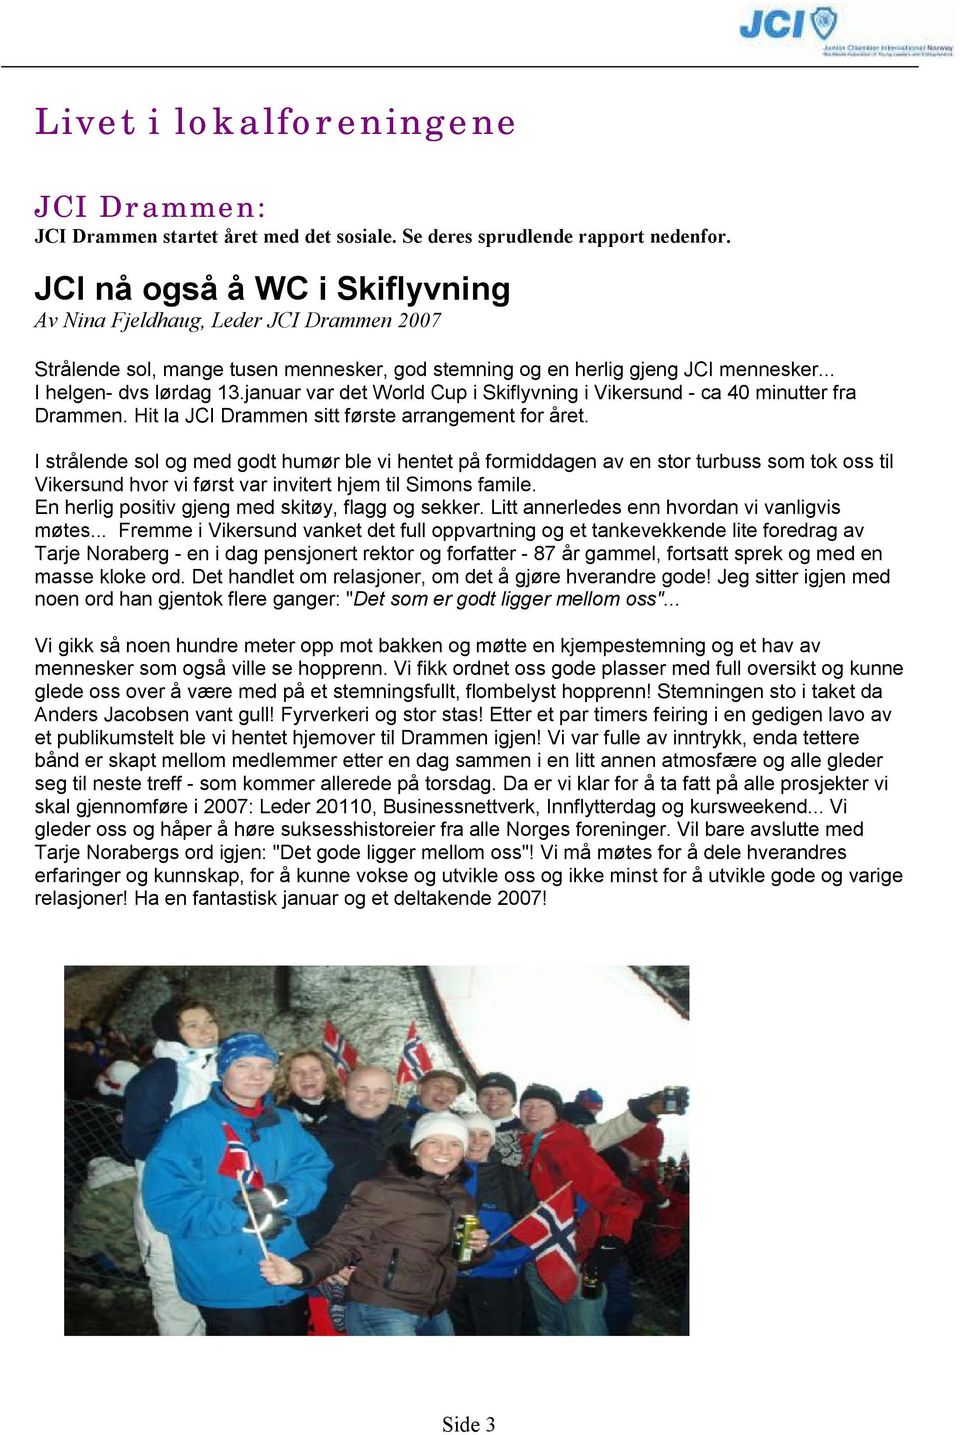 januar var det World Cup i Skiflyvning i Vikersund - ca 40 minutter fra Drammen. Hit la JCI Drammen sitt første arrangement for året.